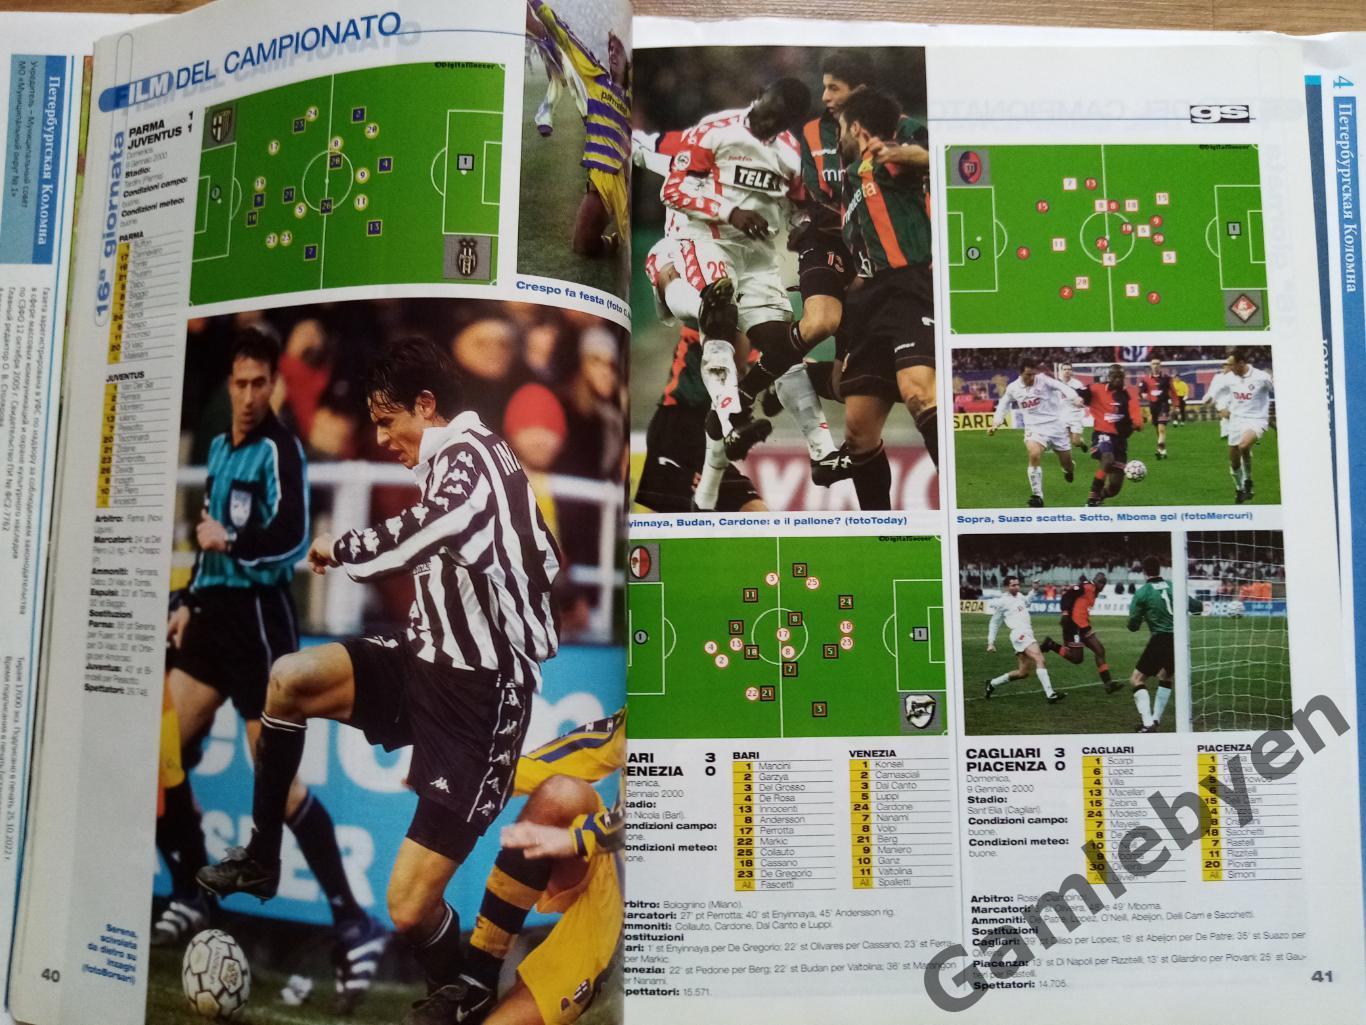 Спецвыпуск Guerin sportivo, сезон 1999/2000 в Серии А 7